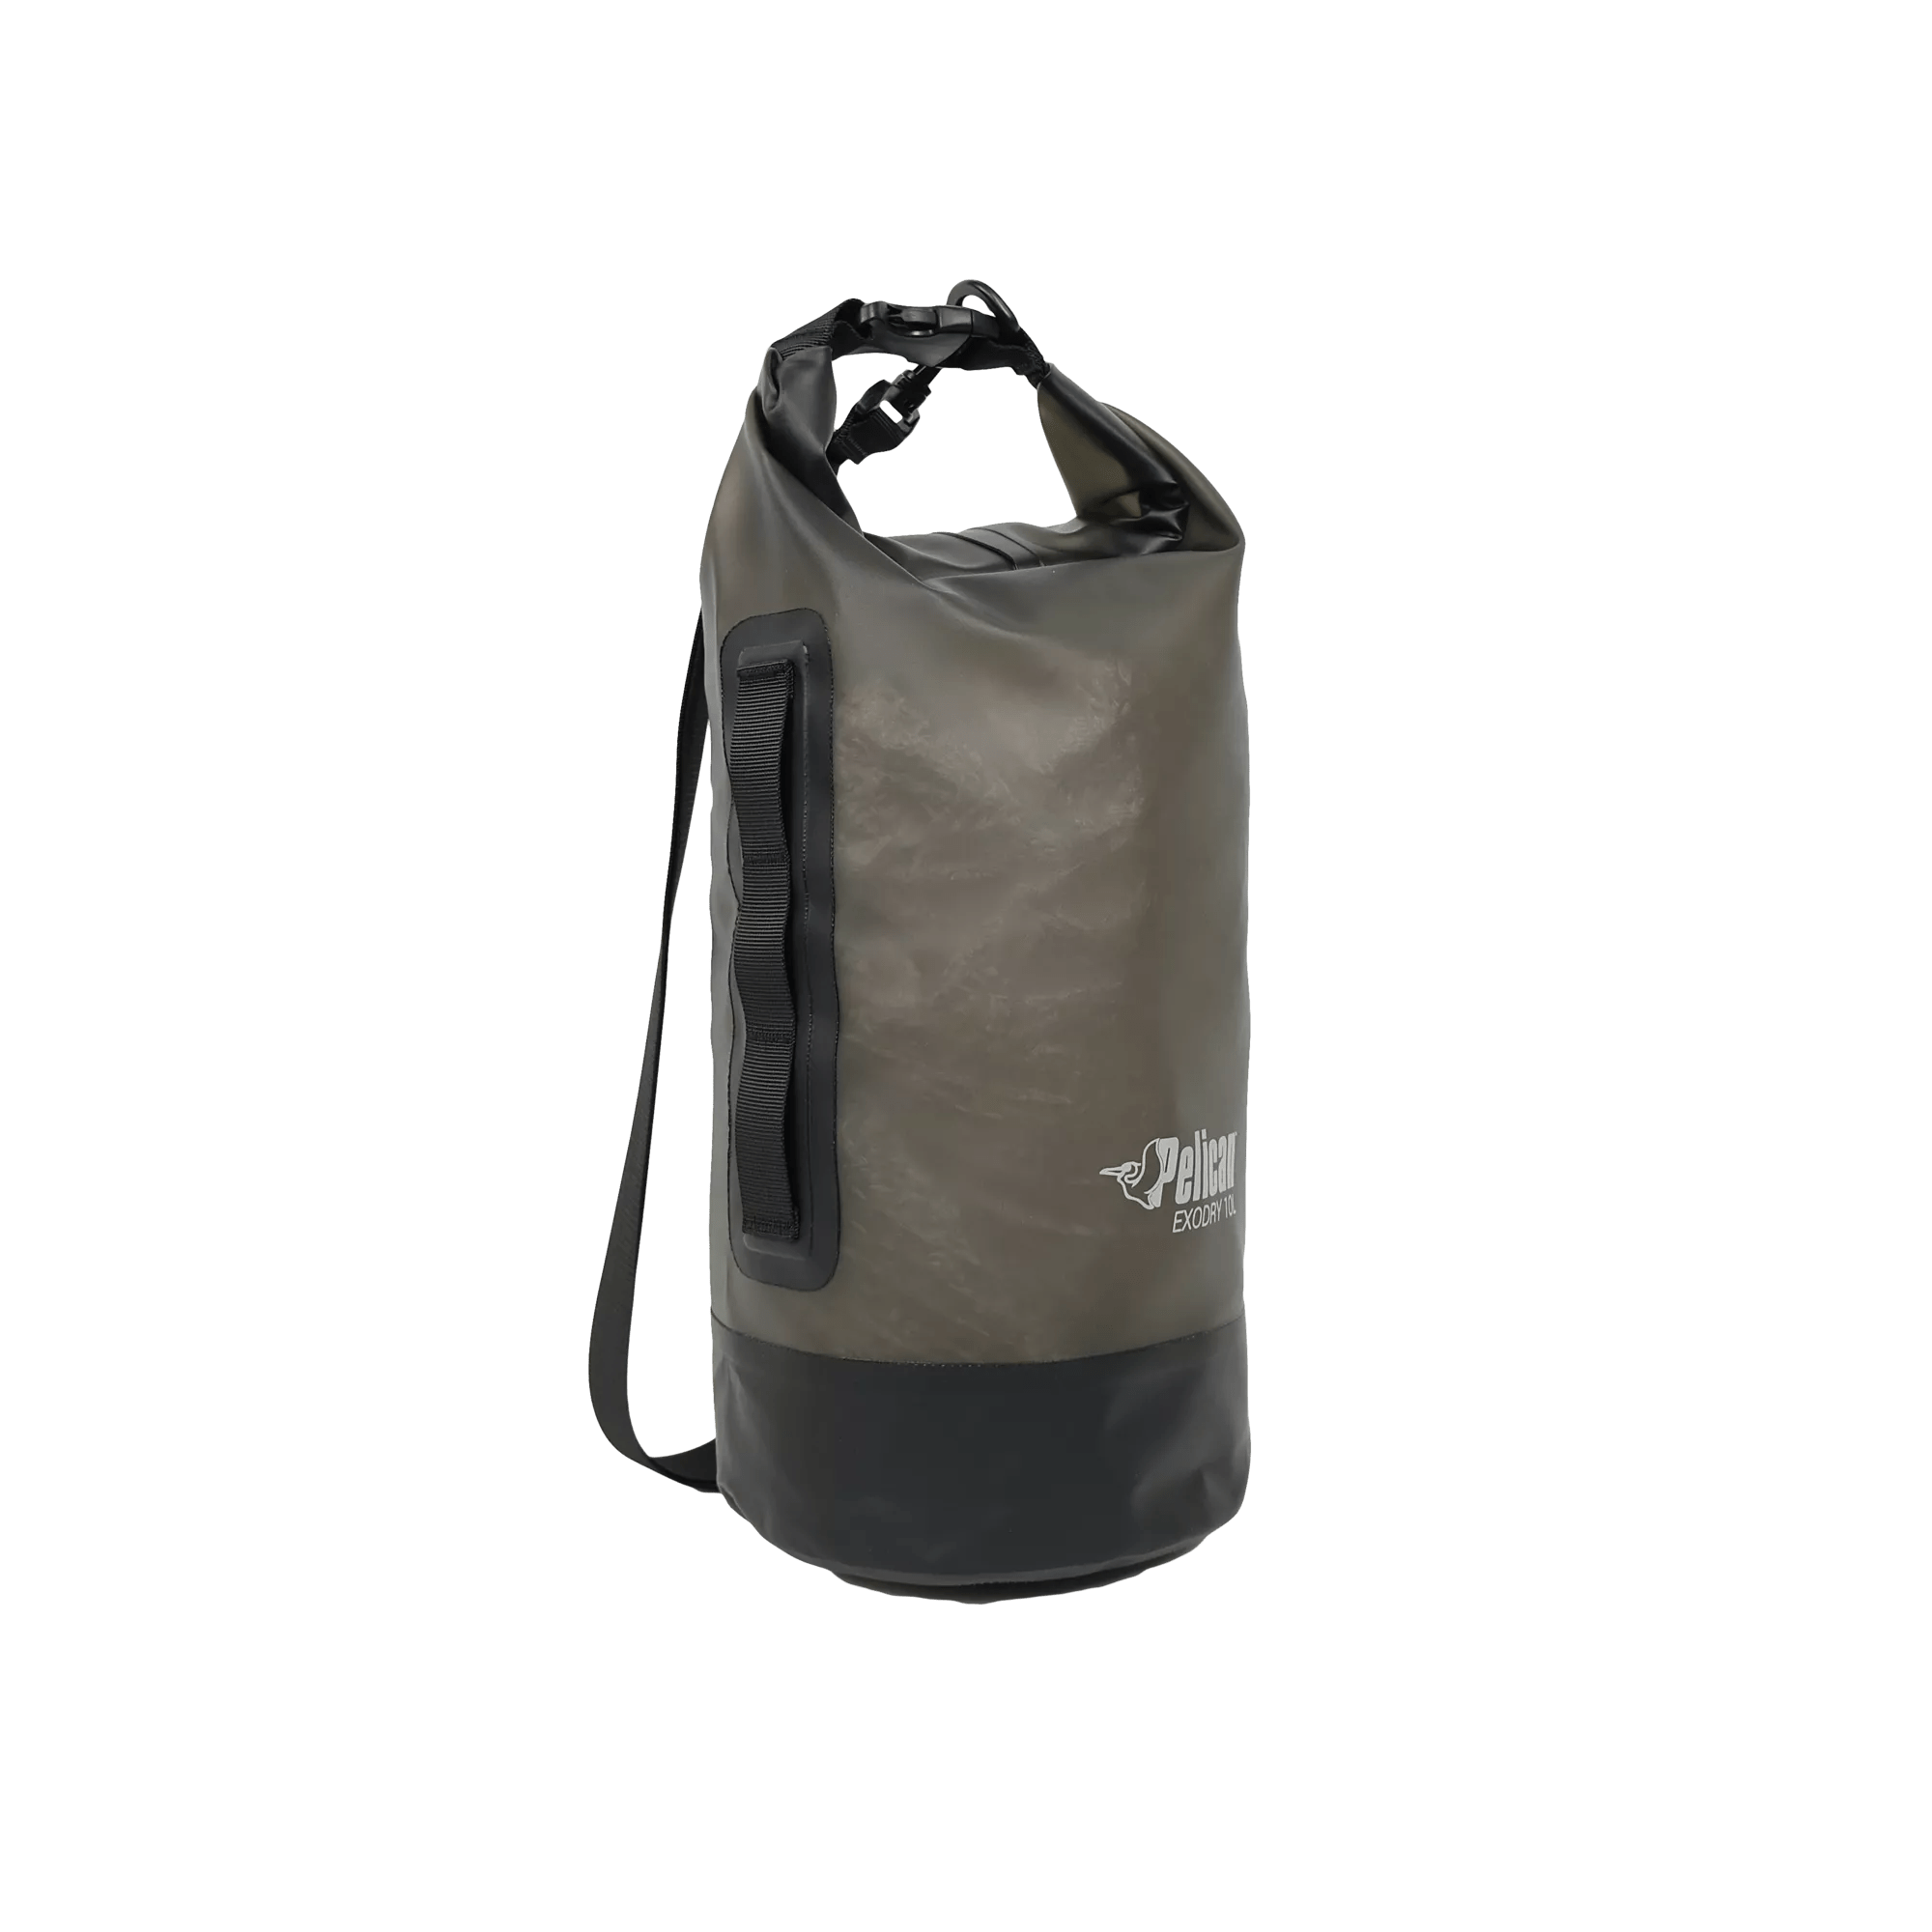 PELICAN - Exodry 10L Waterproof Dry Bag - Black - PS1990-00 - ISO